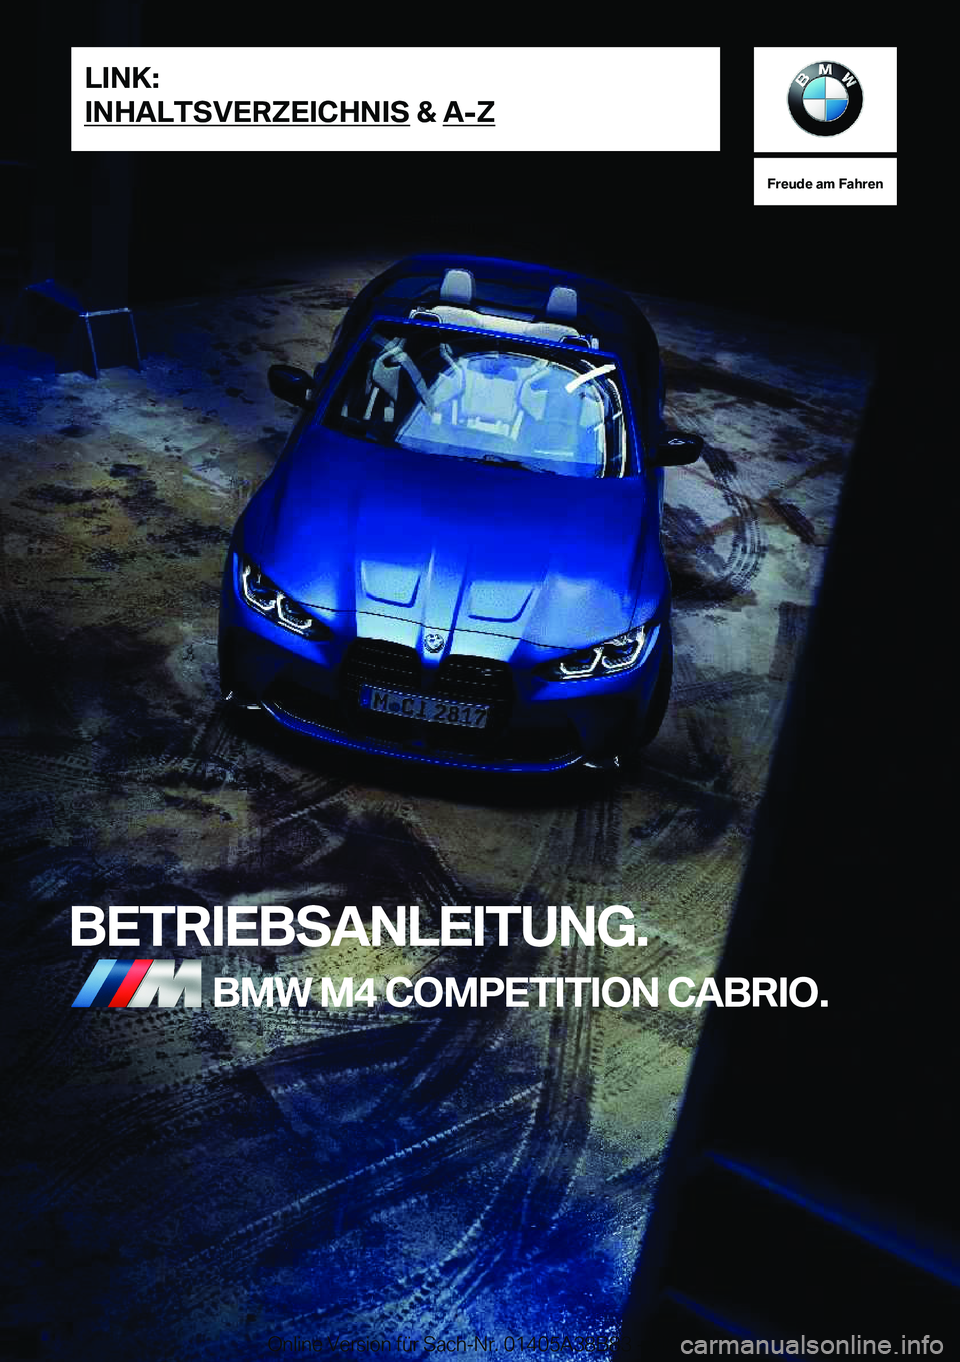 BMW M4 2022  Betriebsanleitungen (in German) �F�r�e�u�d�e��a�m��F�a�h�r�e�n
�B�E�T�R�I�E�B�S�A�N�L�E�I�T�U�N�G�.�B�M�W��M�4��C�O�M�P�E�T�I�T�I�O�N��C�A�B�R�I�O�.�L�I�N�K�:
�I�N�H�A�L�T�S�V�E�R�Z�E�I�C�H�N�I�S��&��A�-�Z�O�n�l�i�n�e��V�e�r